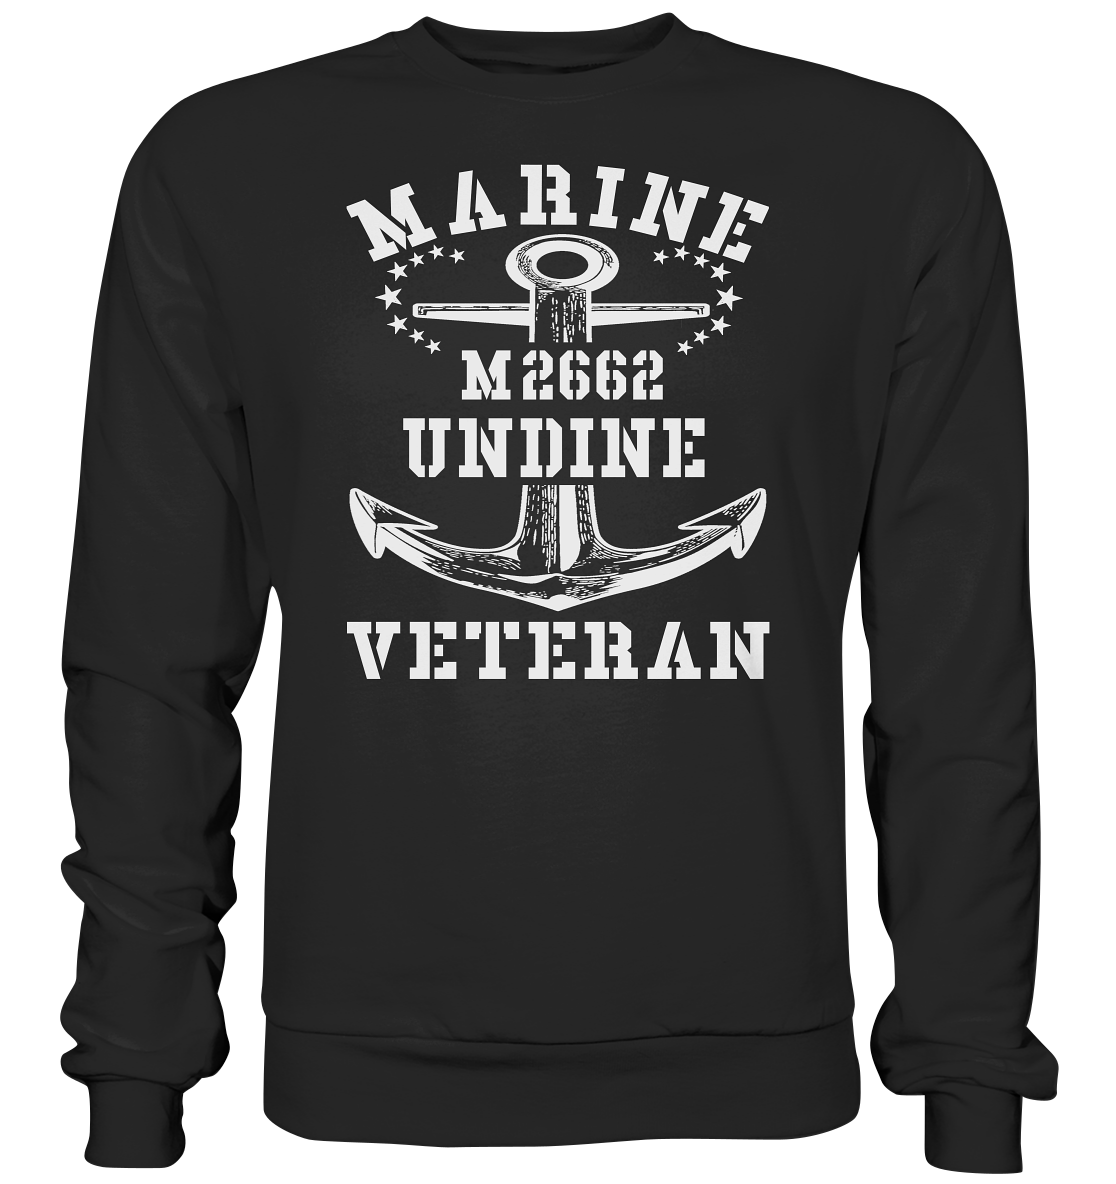 BiMi M2662 UNDINE Marine Veteran - Premium Sweatshirt